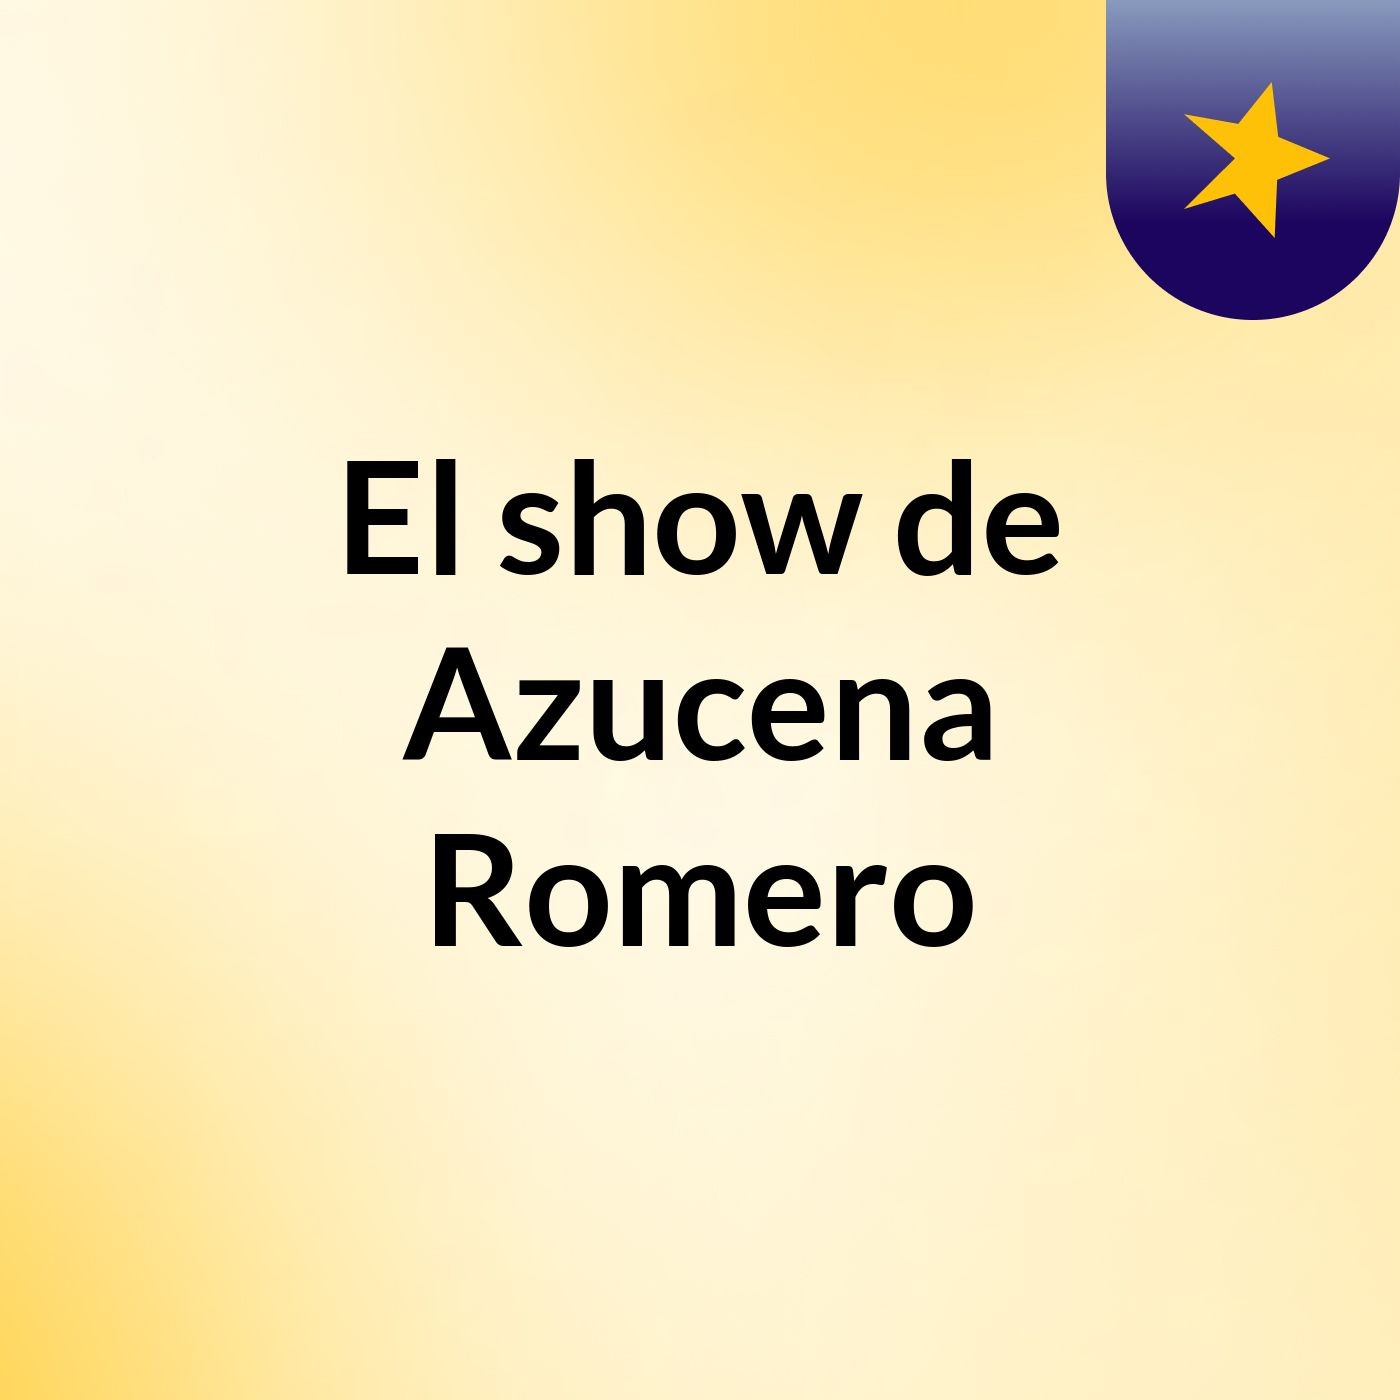 Episodio 4 - El show de Azucena Romero